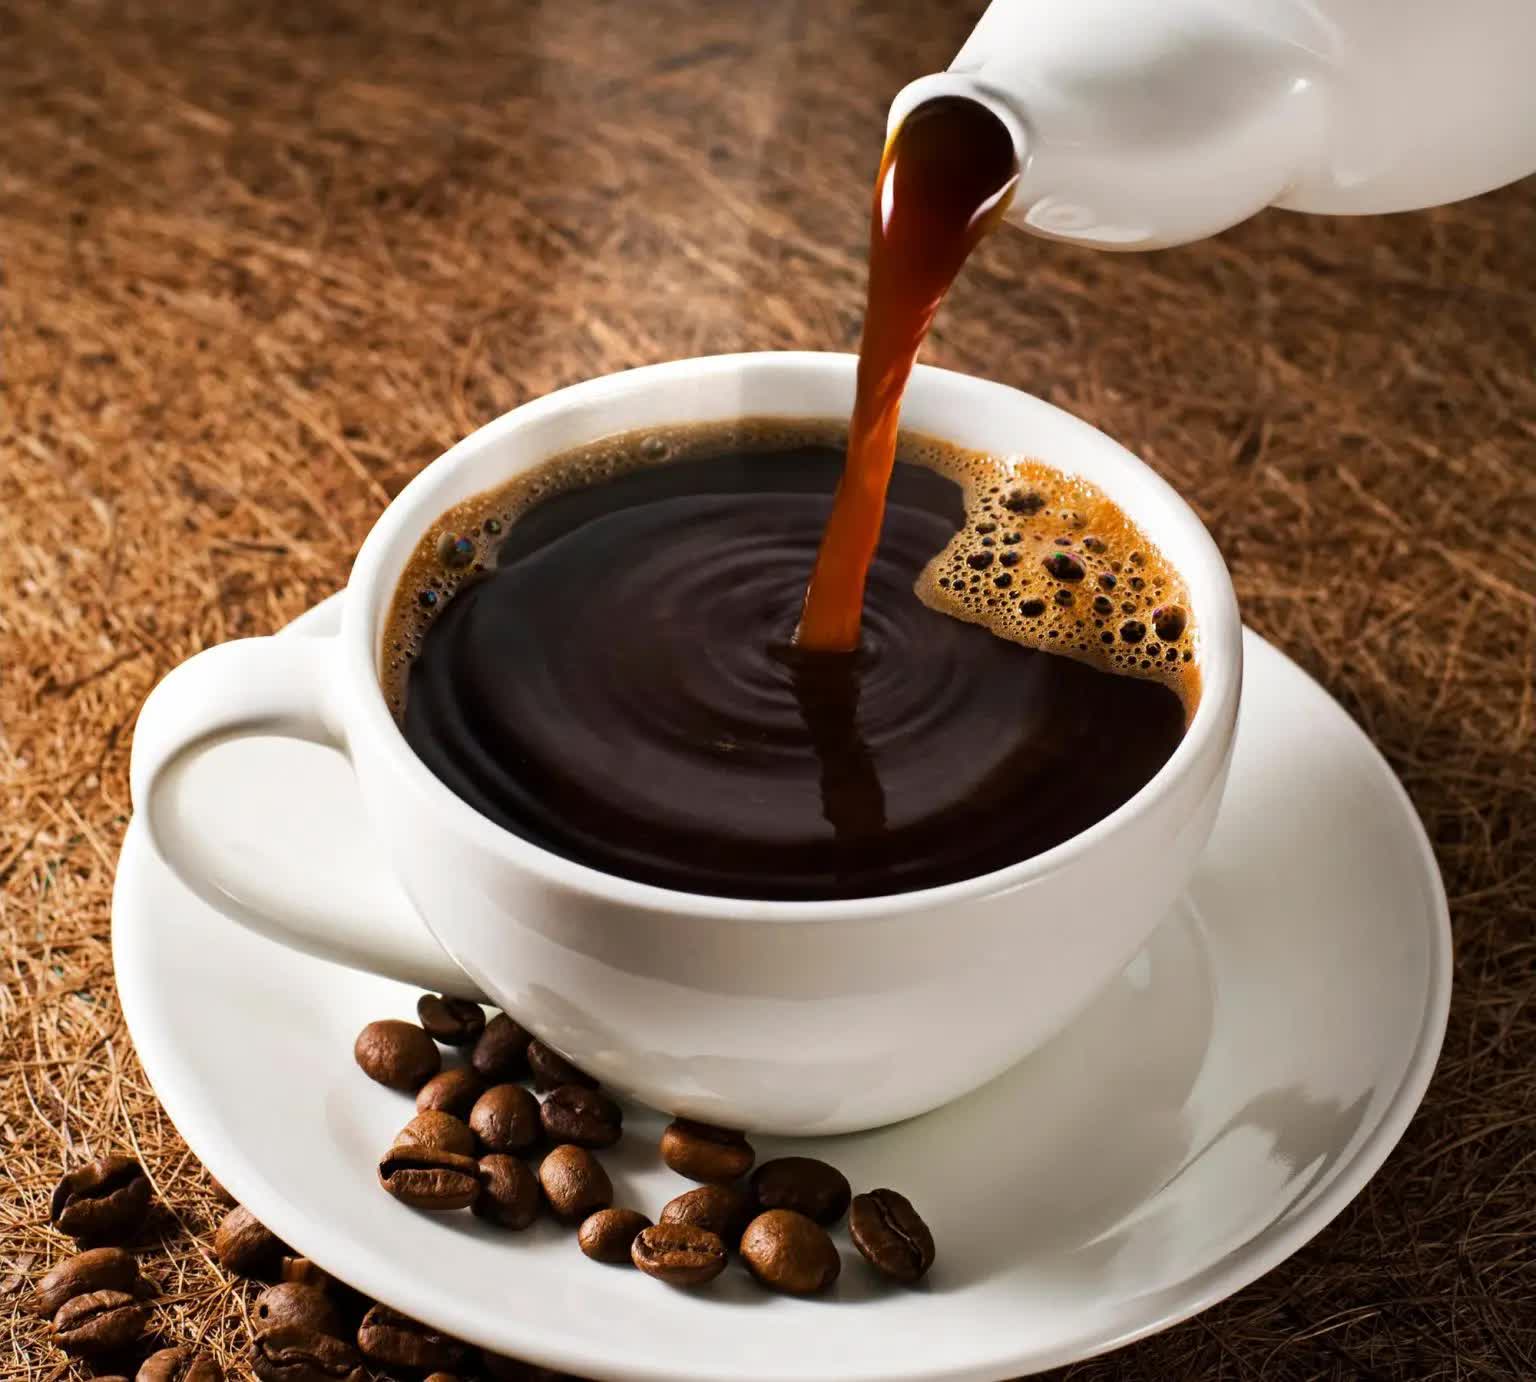 Nghiên cứu khoa học: Uống cà phê giúp sống thọ hơn và đây là số lượng nên uống mỗi ngày - Ảnh 2.